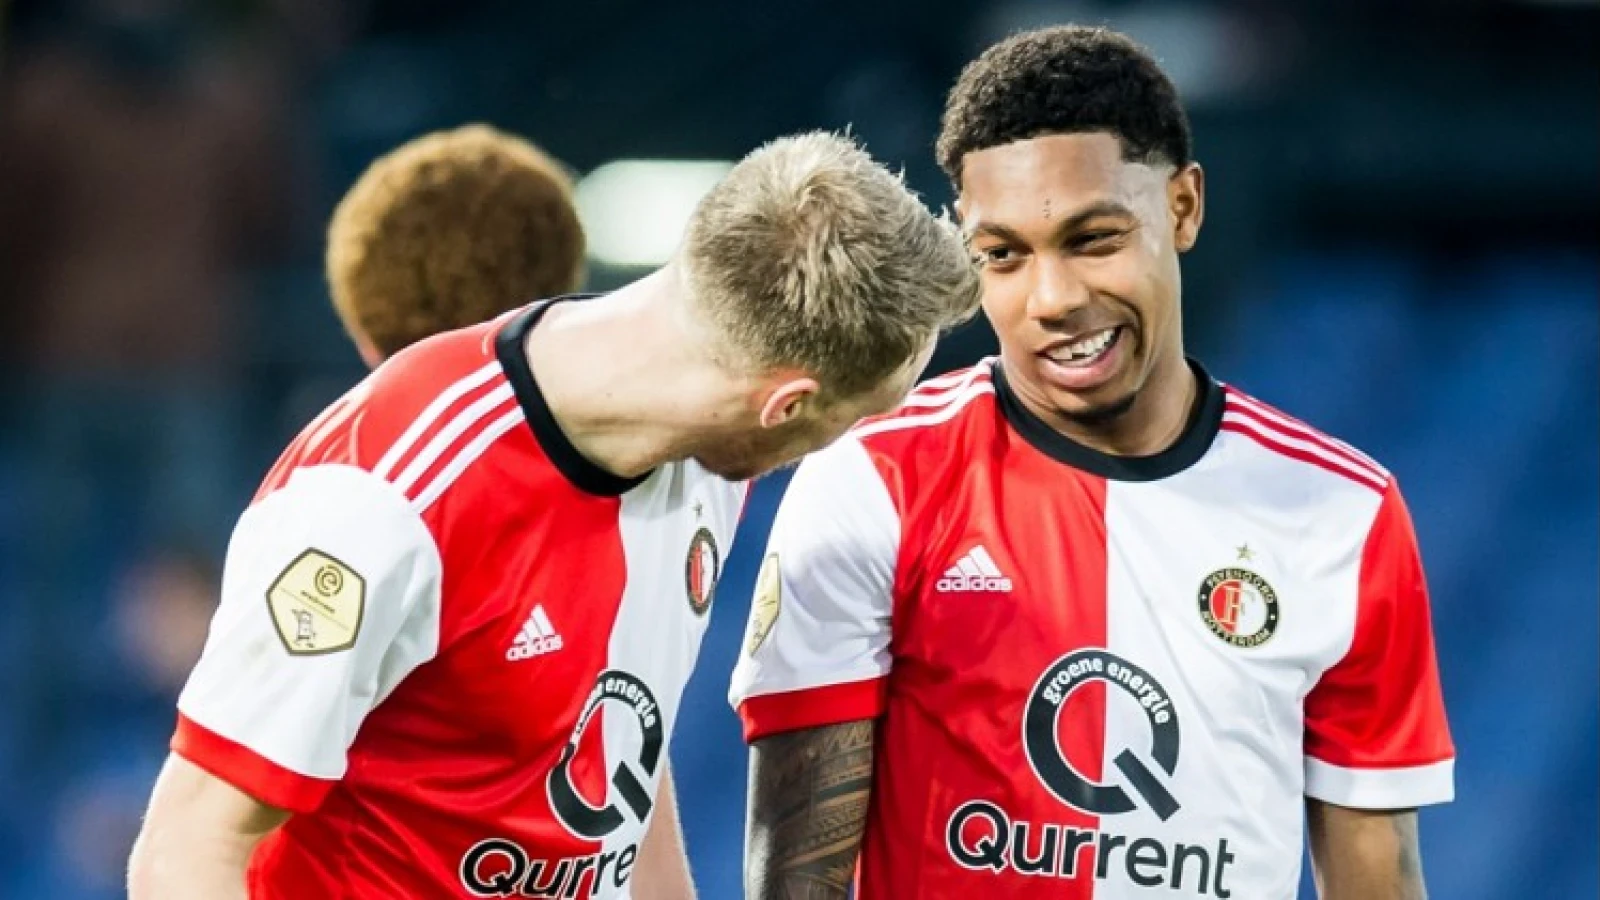 Keiharde woorden over Feyenoorder: ‘Die is helemaal niet zoveel waard'